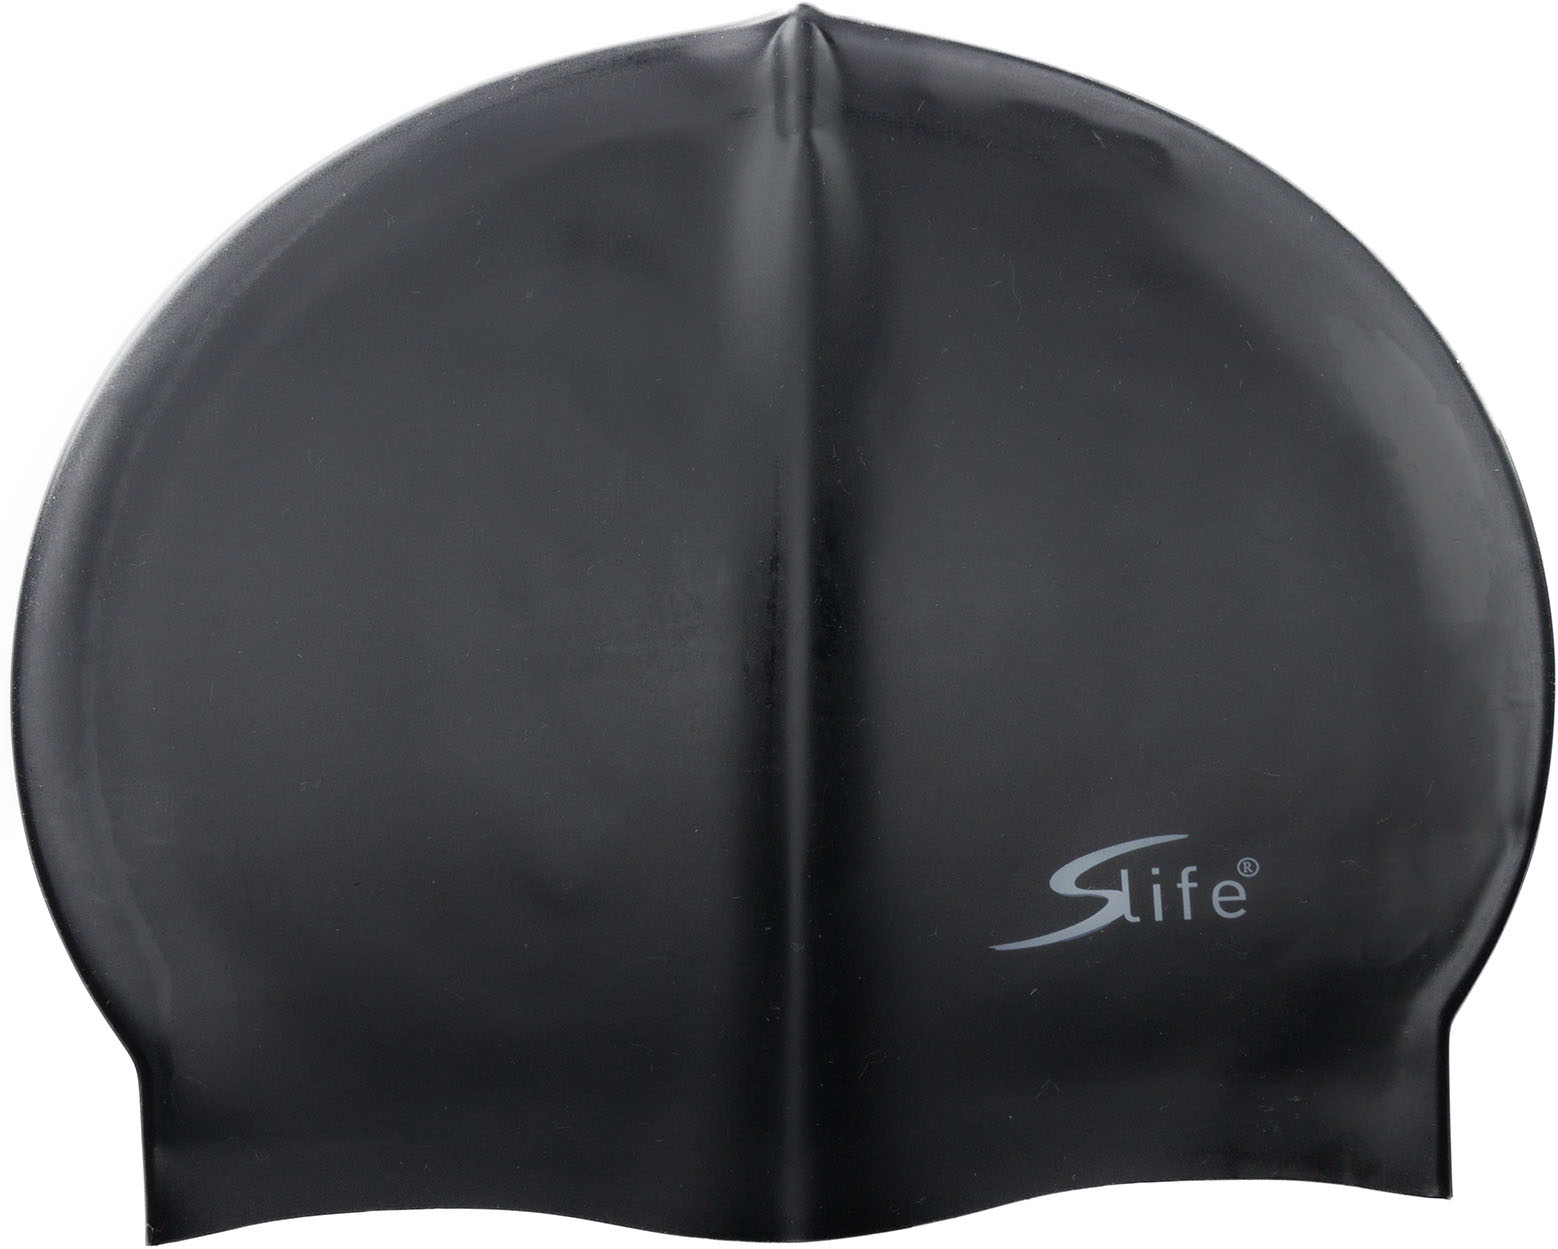 Plavecká silikonová čepice Slife černá